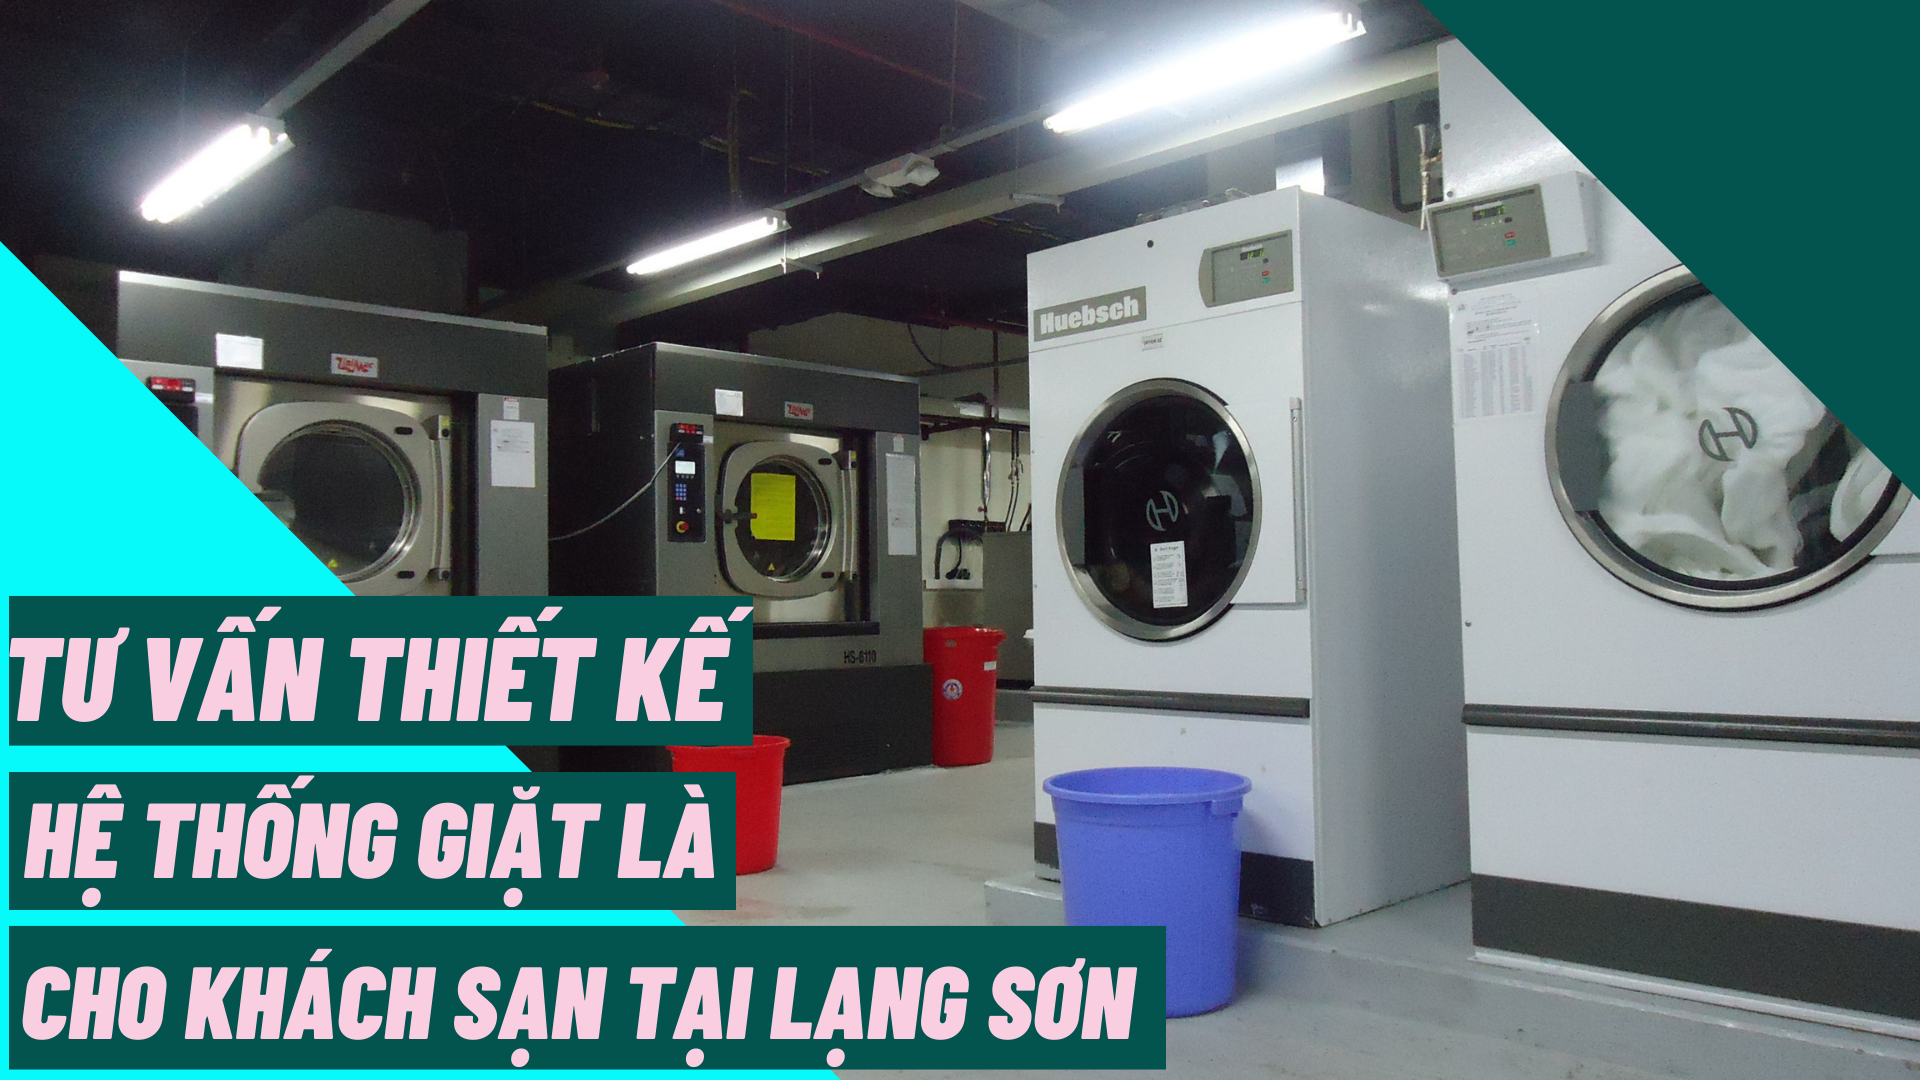 Tư vấn thiết kế hệ thống giặt là cho khách sạn tại Lạng Sơn